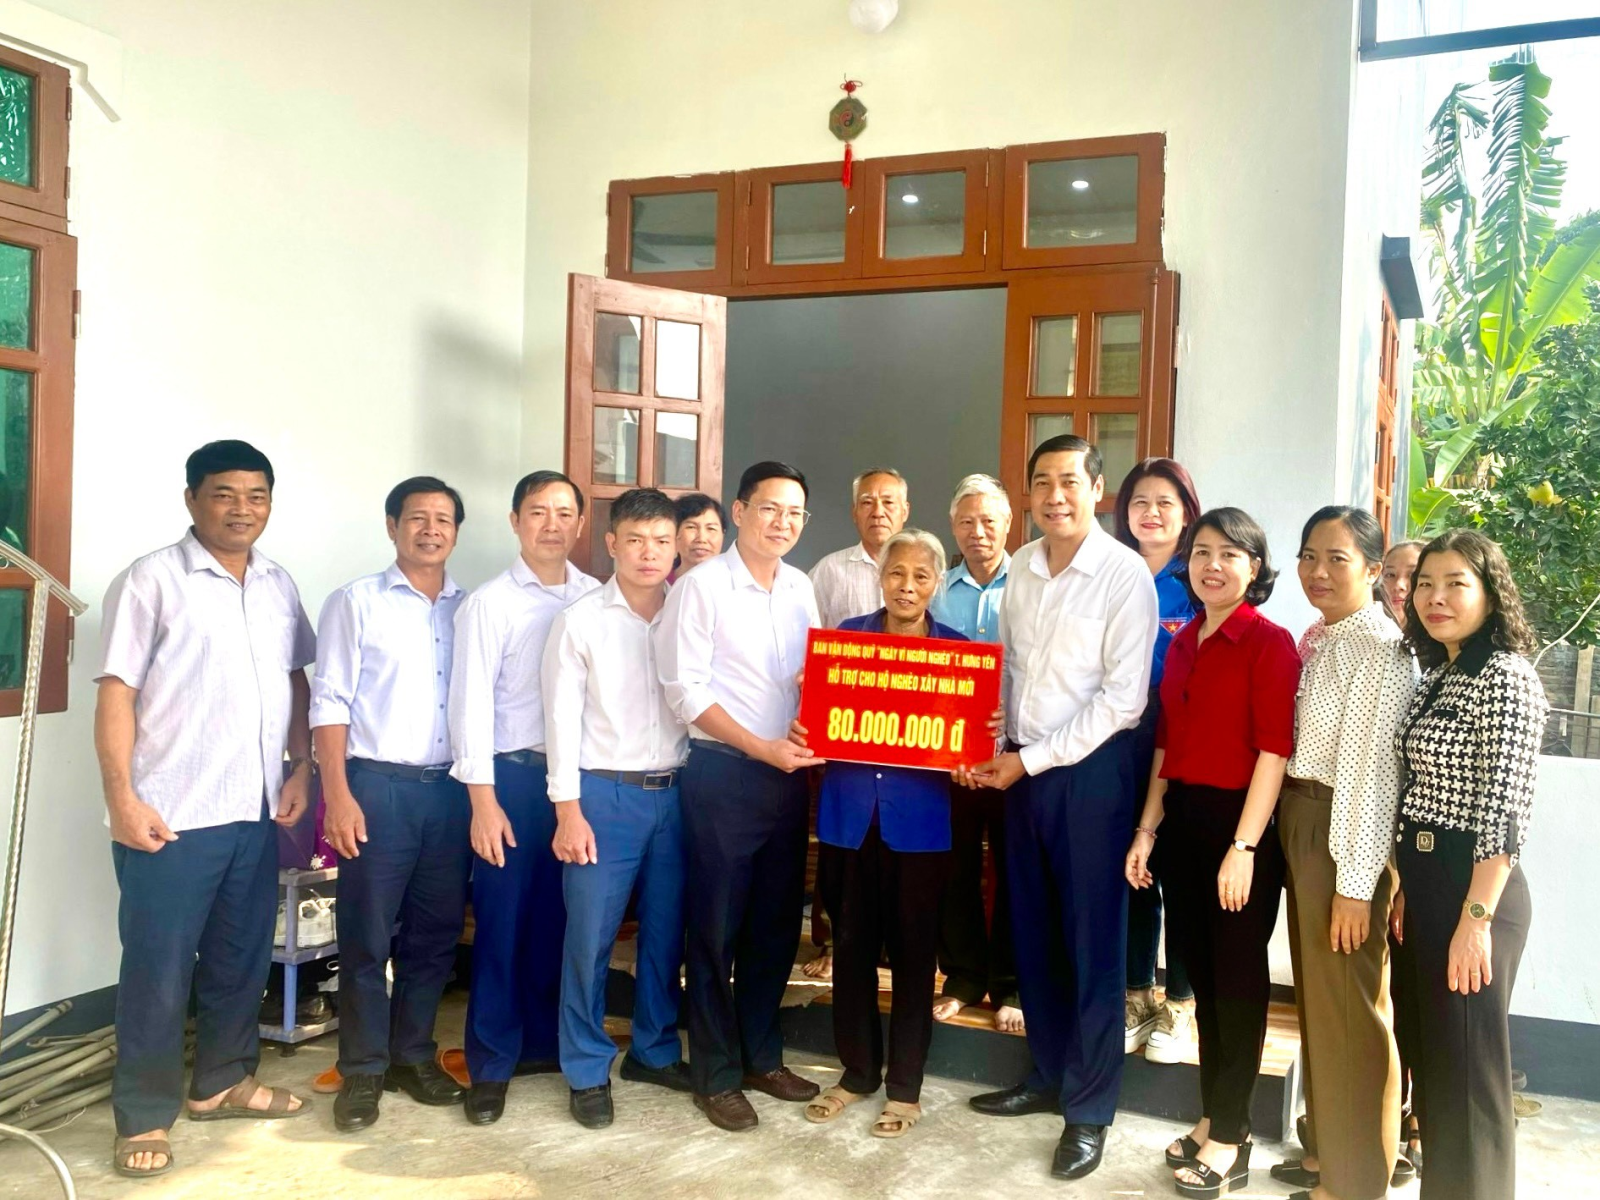 Trao tiền hỗ trợ xây nhà đại đoàn kết cho hộ nghèo  trên địa bàn phường Lam Sơn